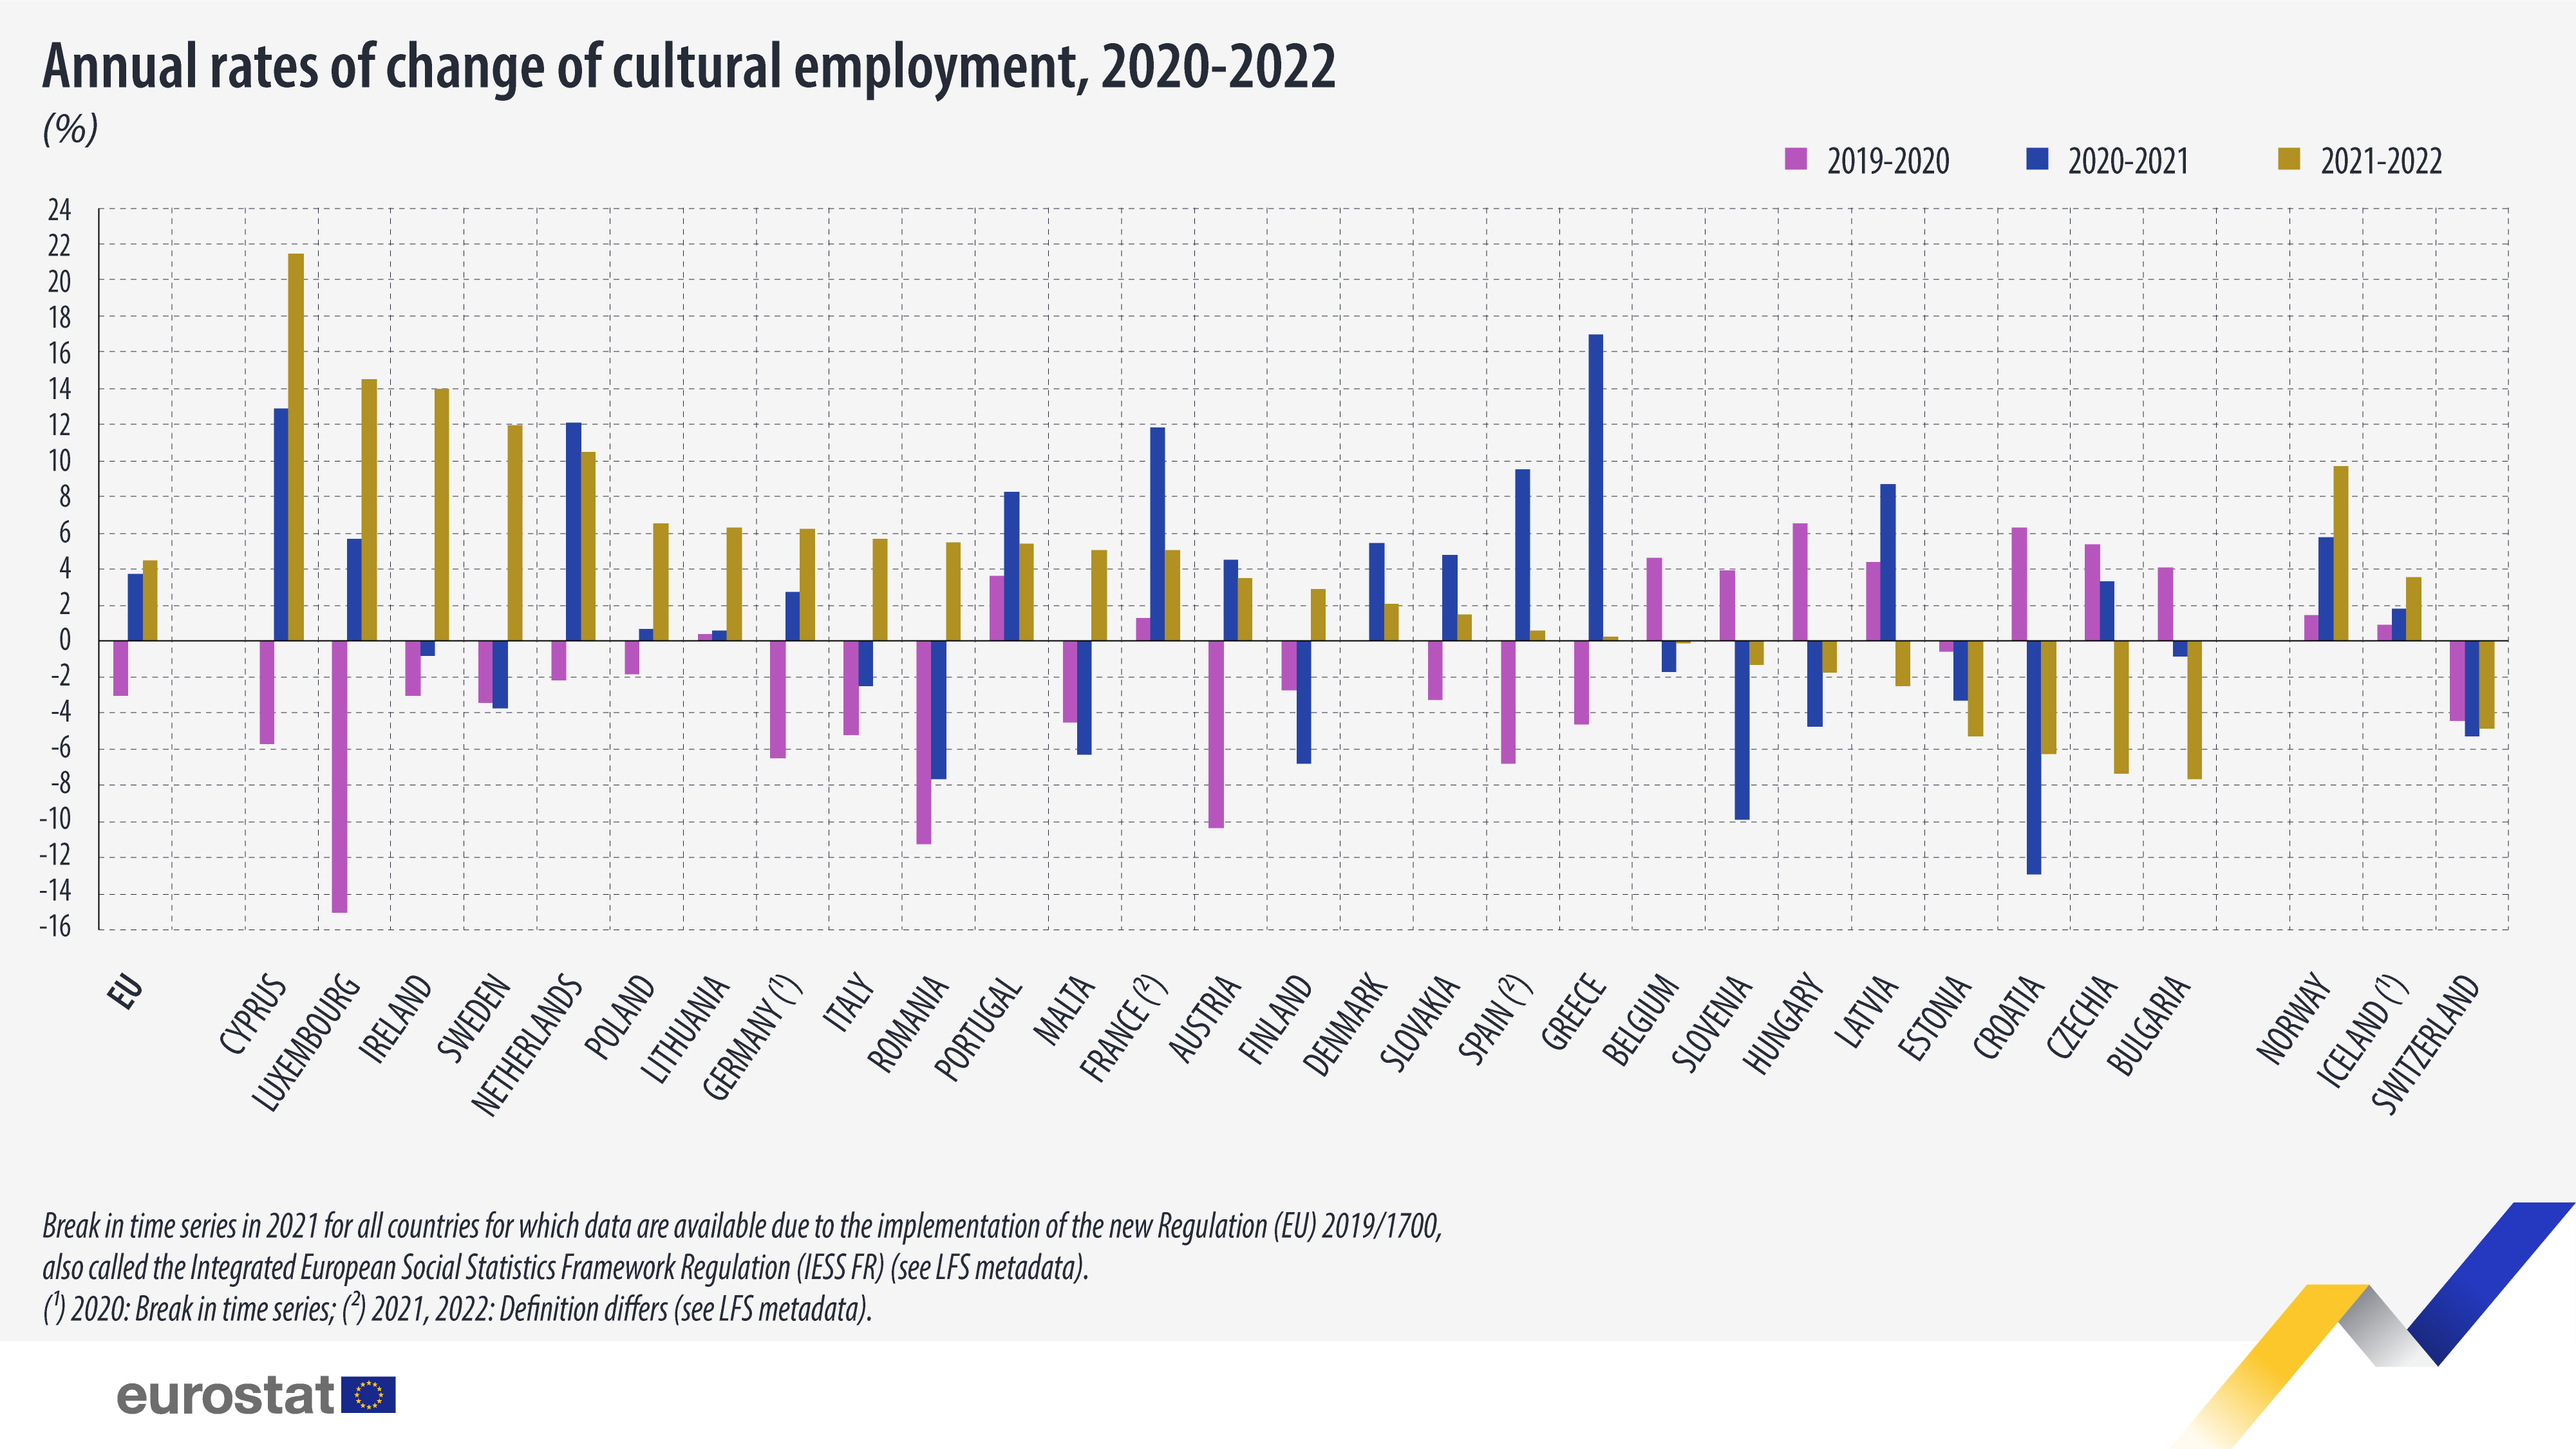 Gràfic de barres: taxes anuals de variació de l'ocupació cultural, 2020-2022 (%)